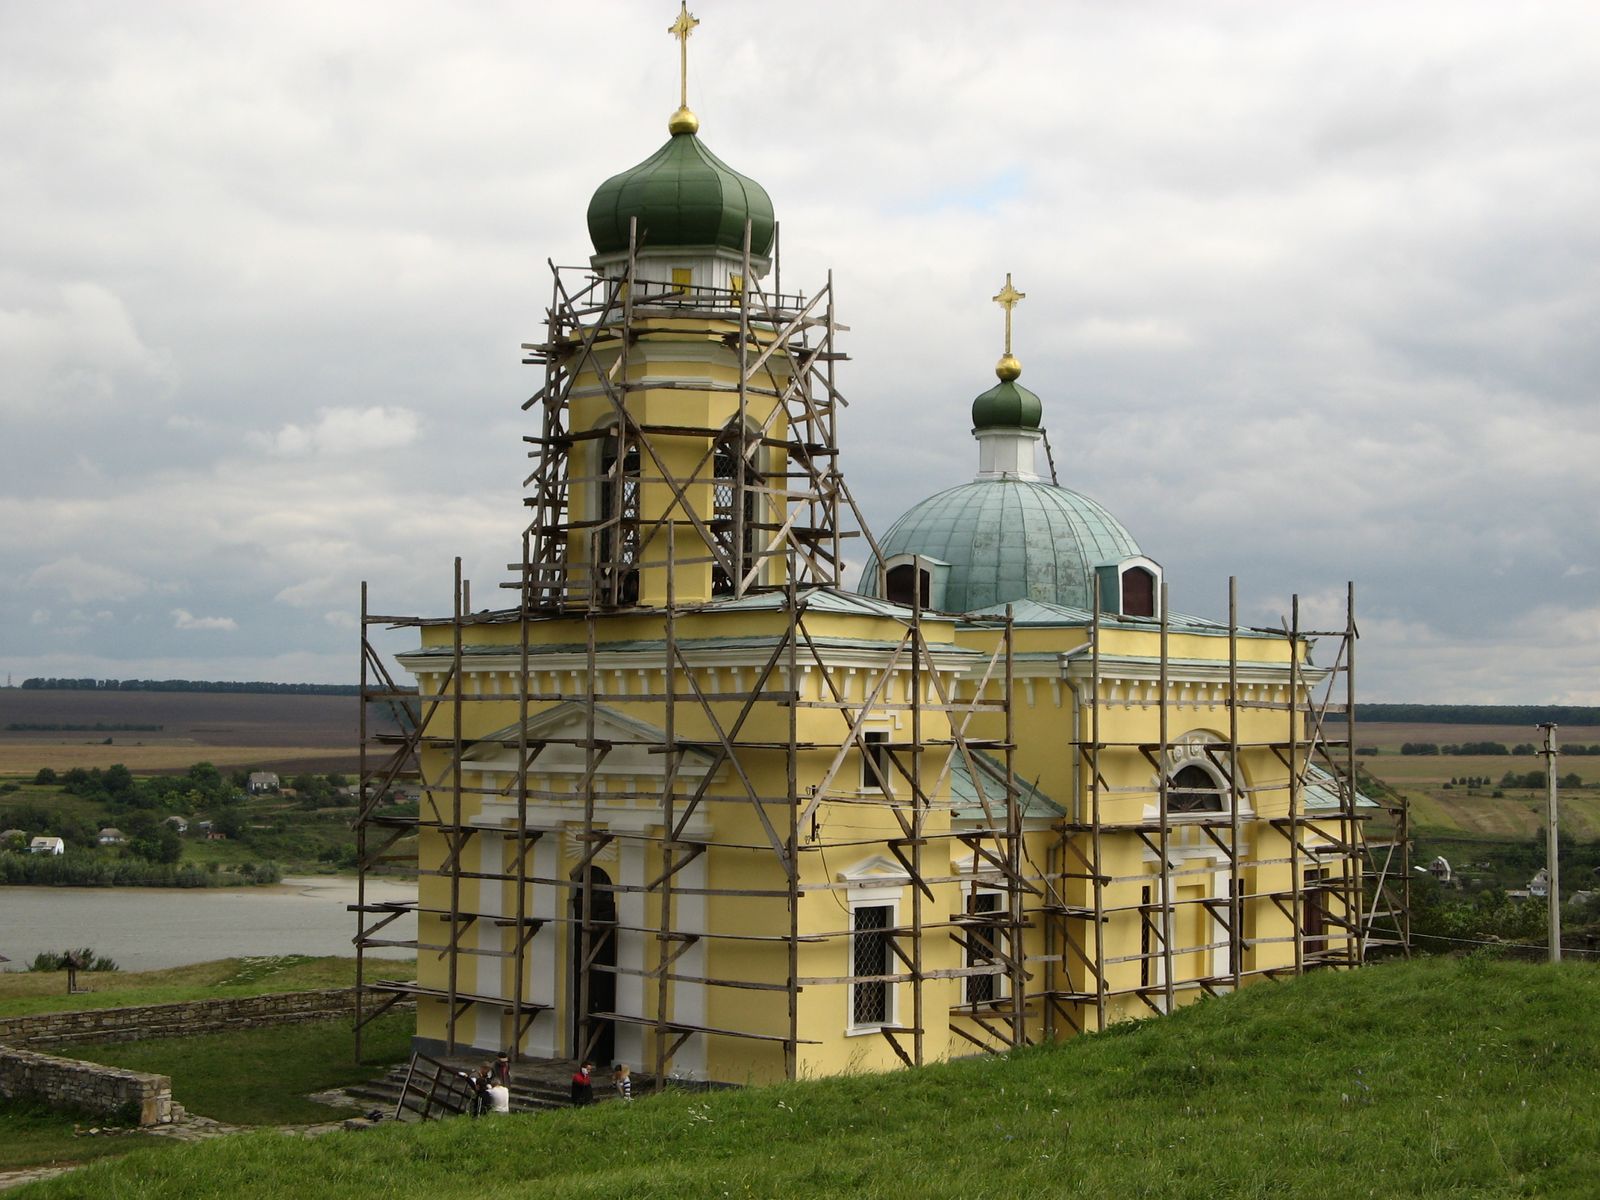 Восстановление храмов в россии